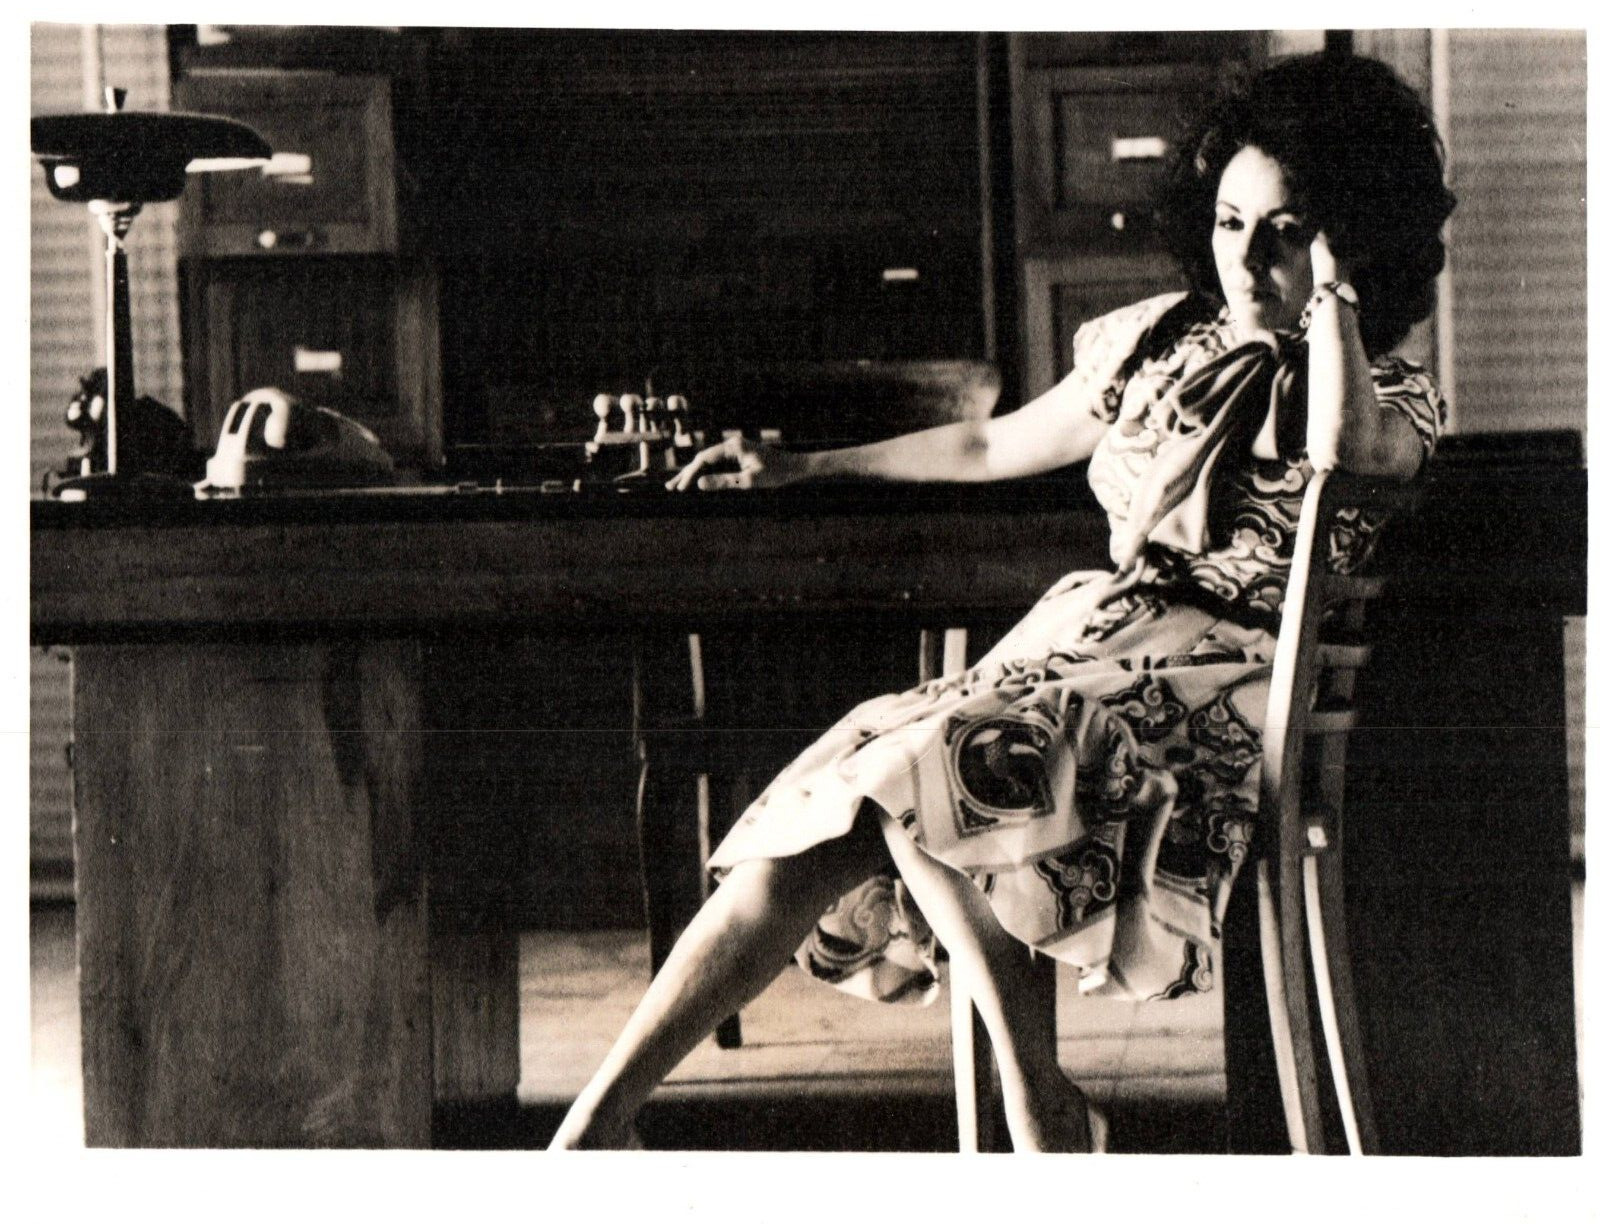 HOLLYWOOD BEAUTY ELIZABETH TAYLOR STYLISH POSE STUNNING PORTRAIT 1960s Photo C35